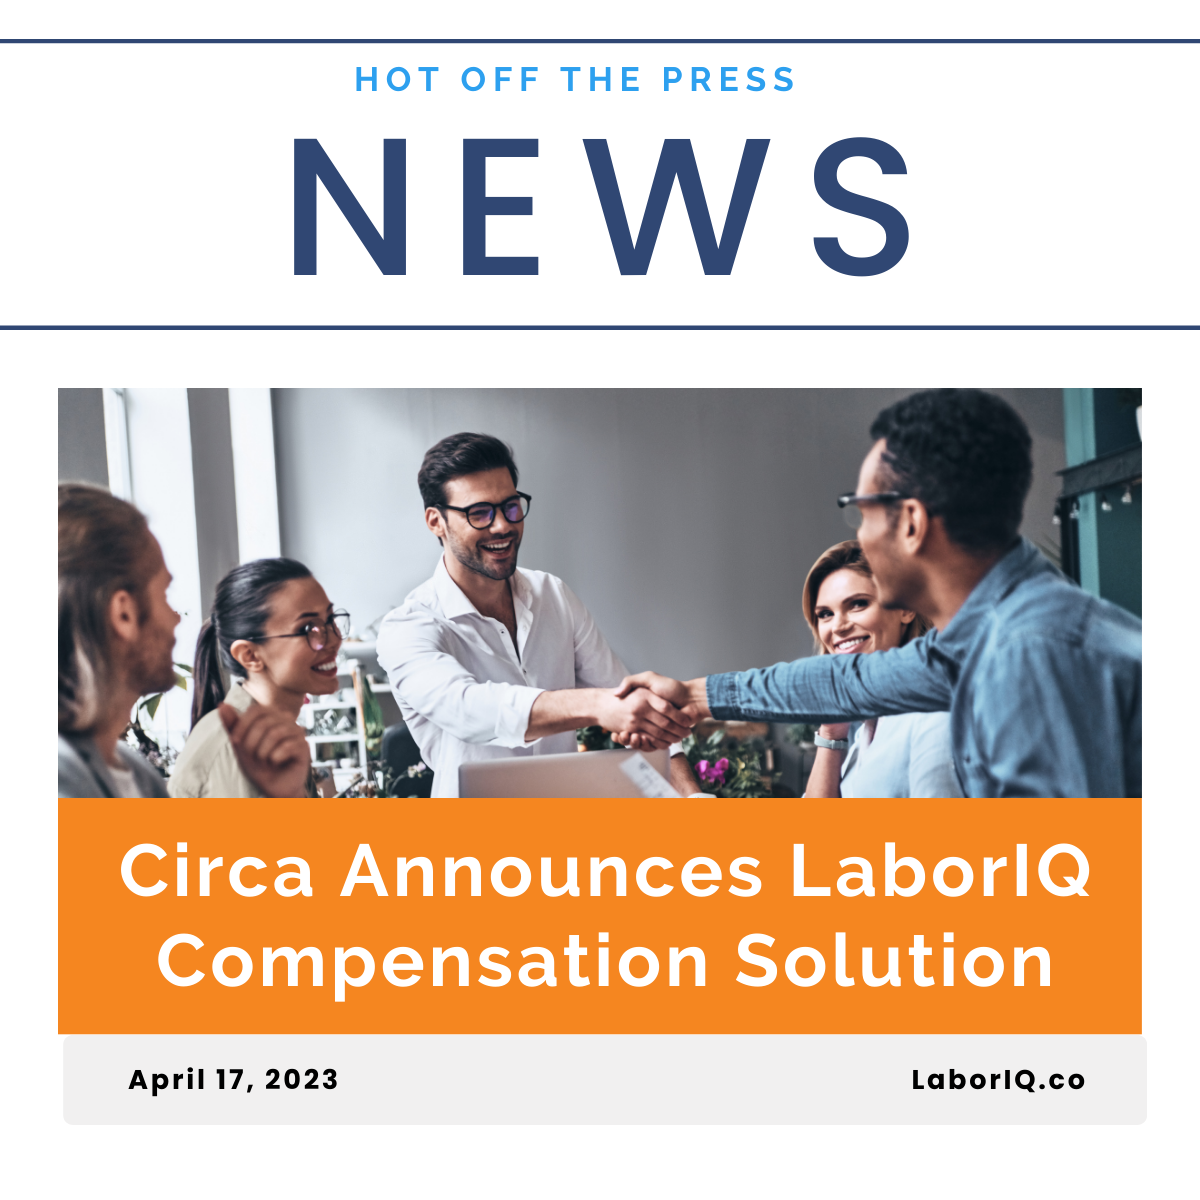 Circa Announces LaborIQ Compensation Solution